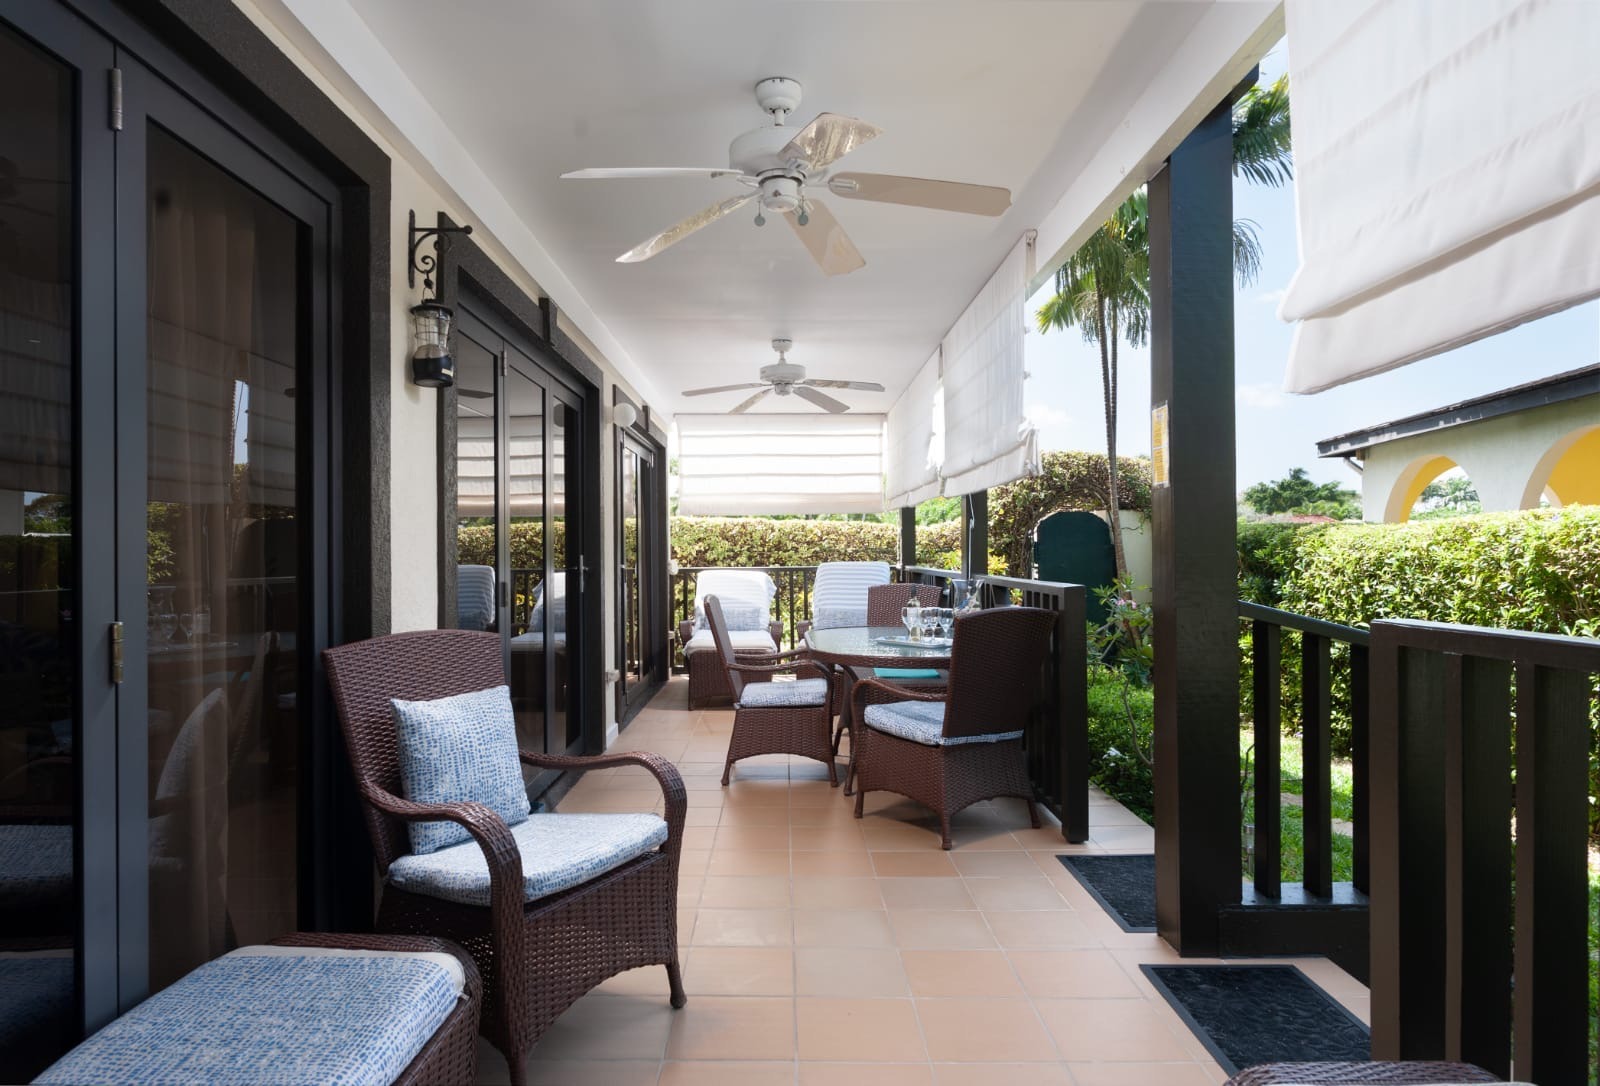 Ixora Barbados Harding's International Real Estate